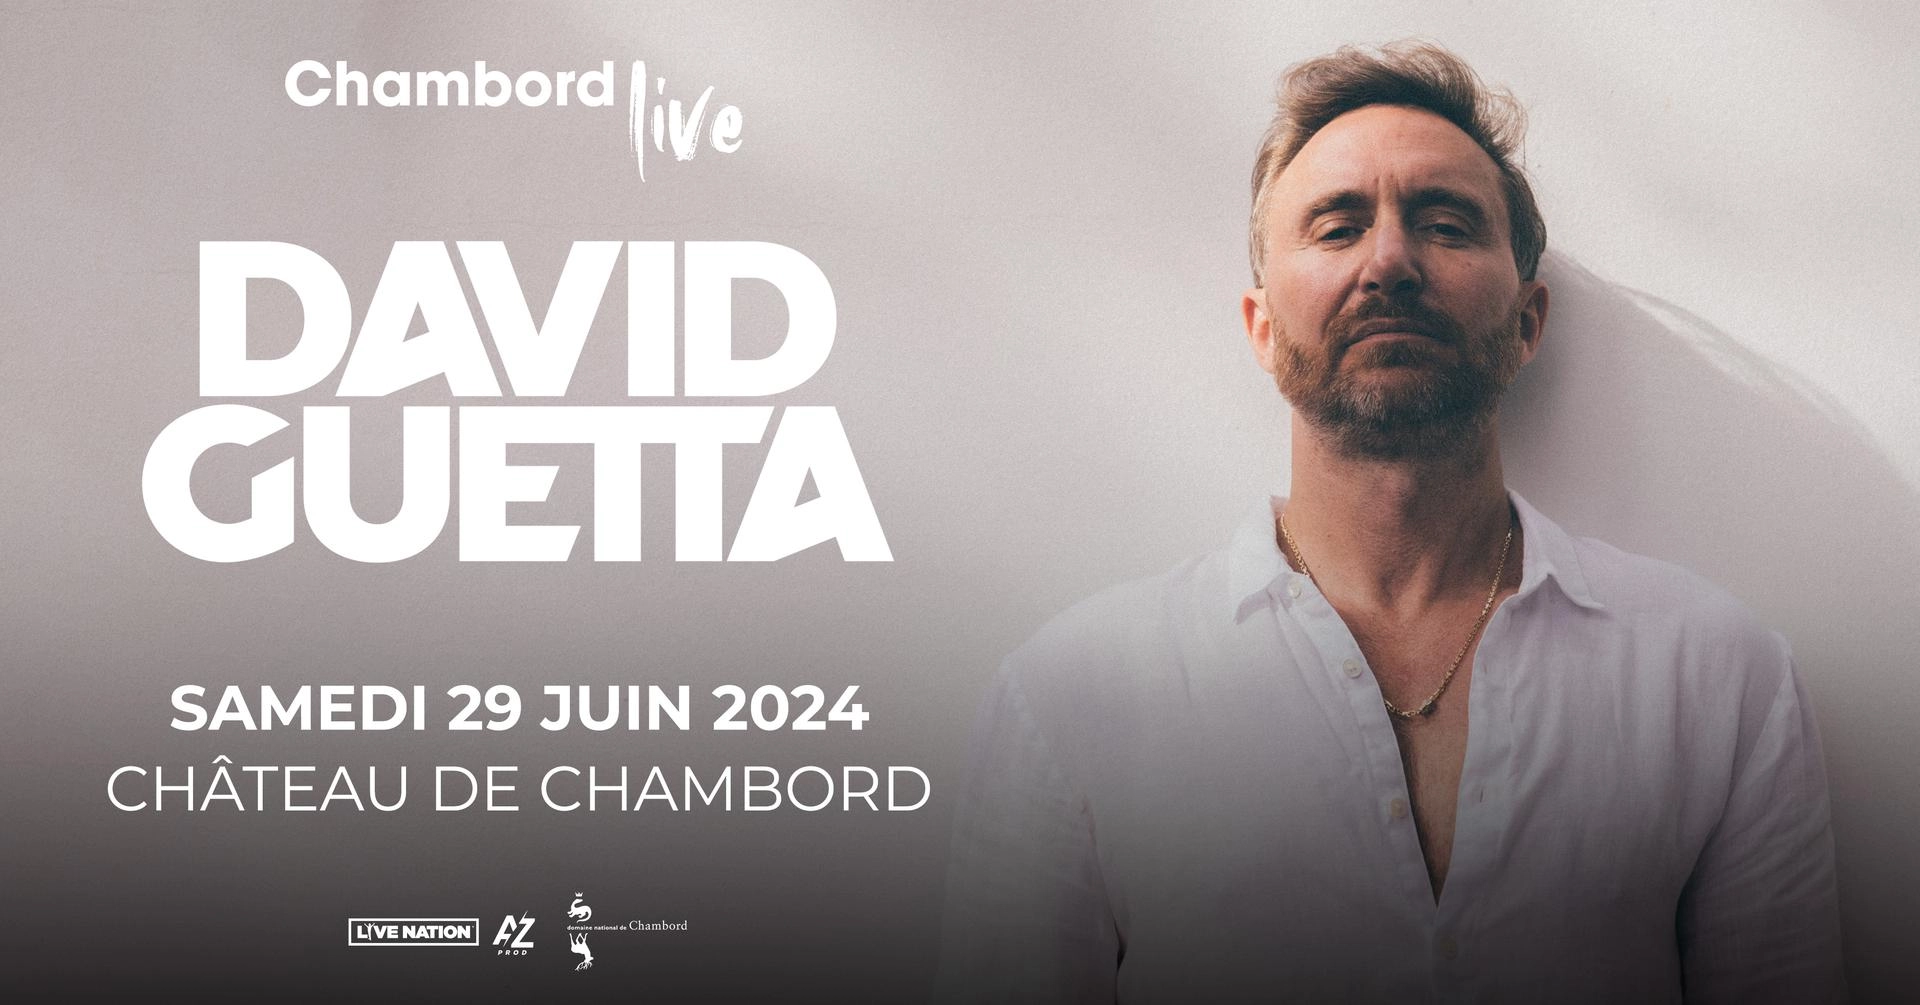 David Guetta - Chambord Live 2024 in der Chateau de Chambord Tickets